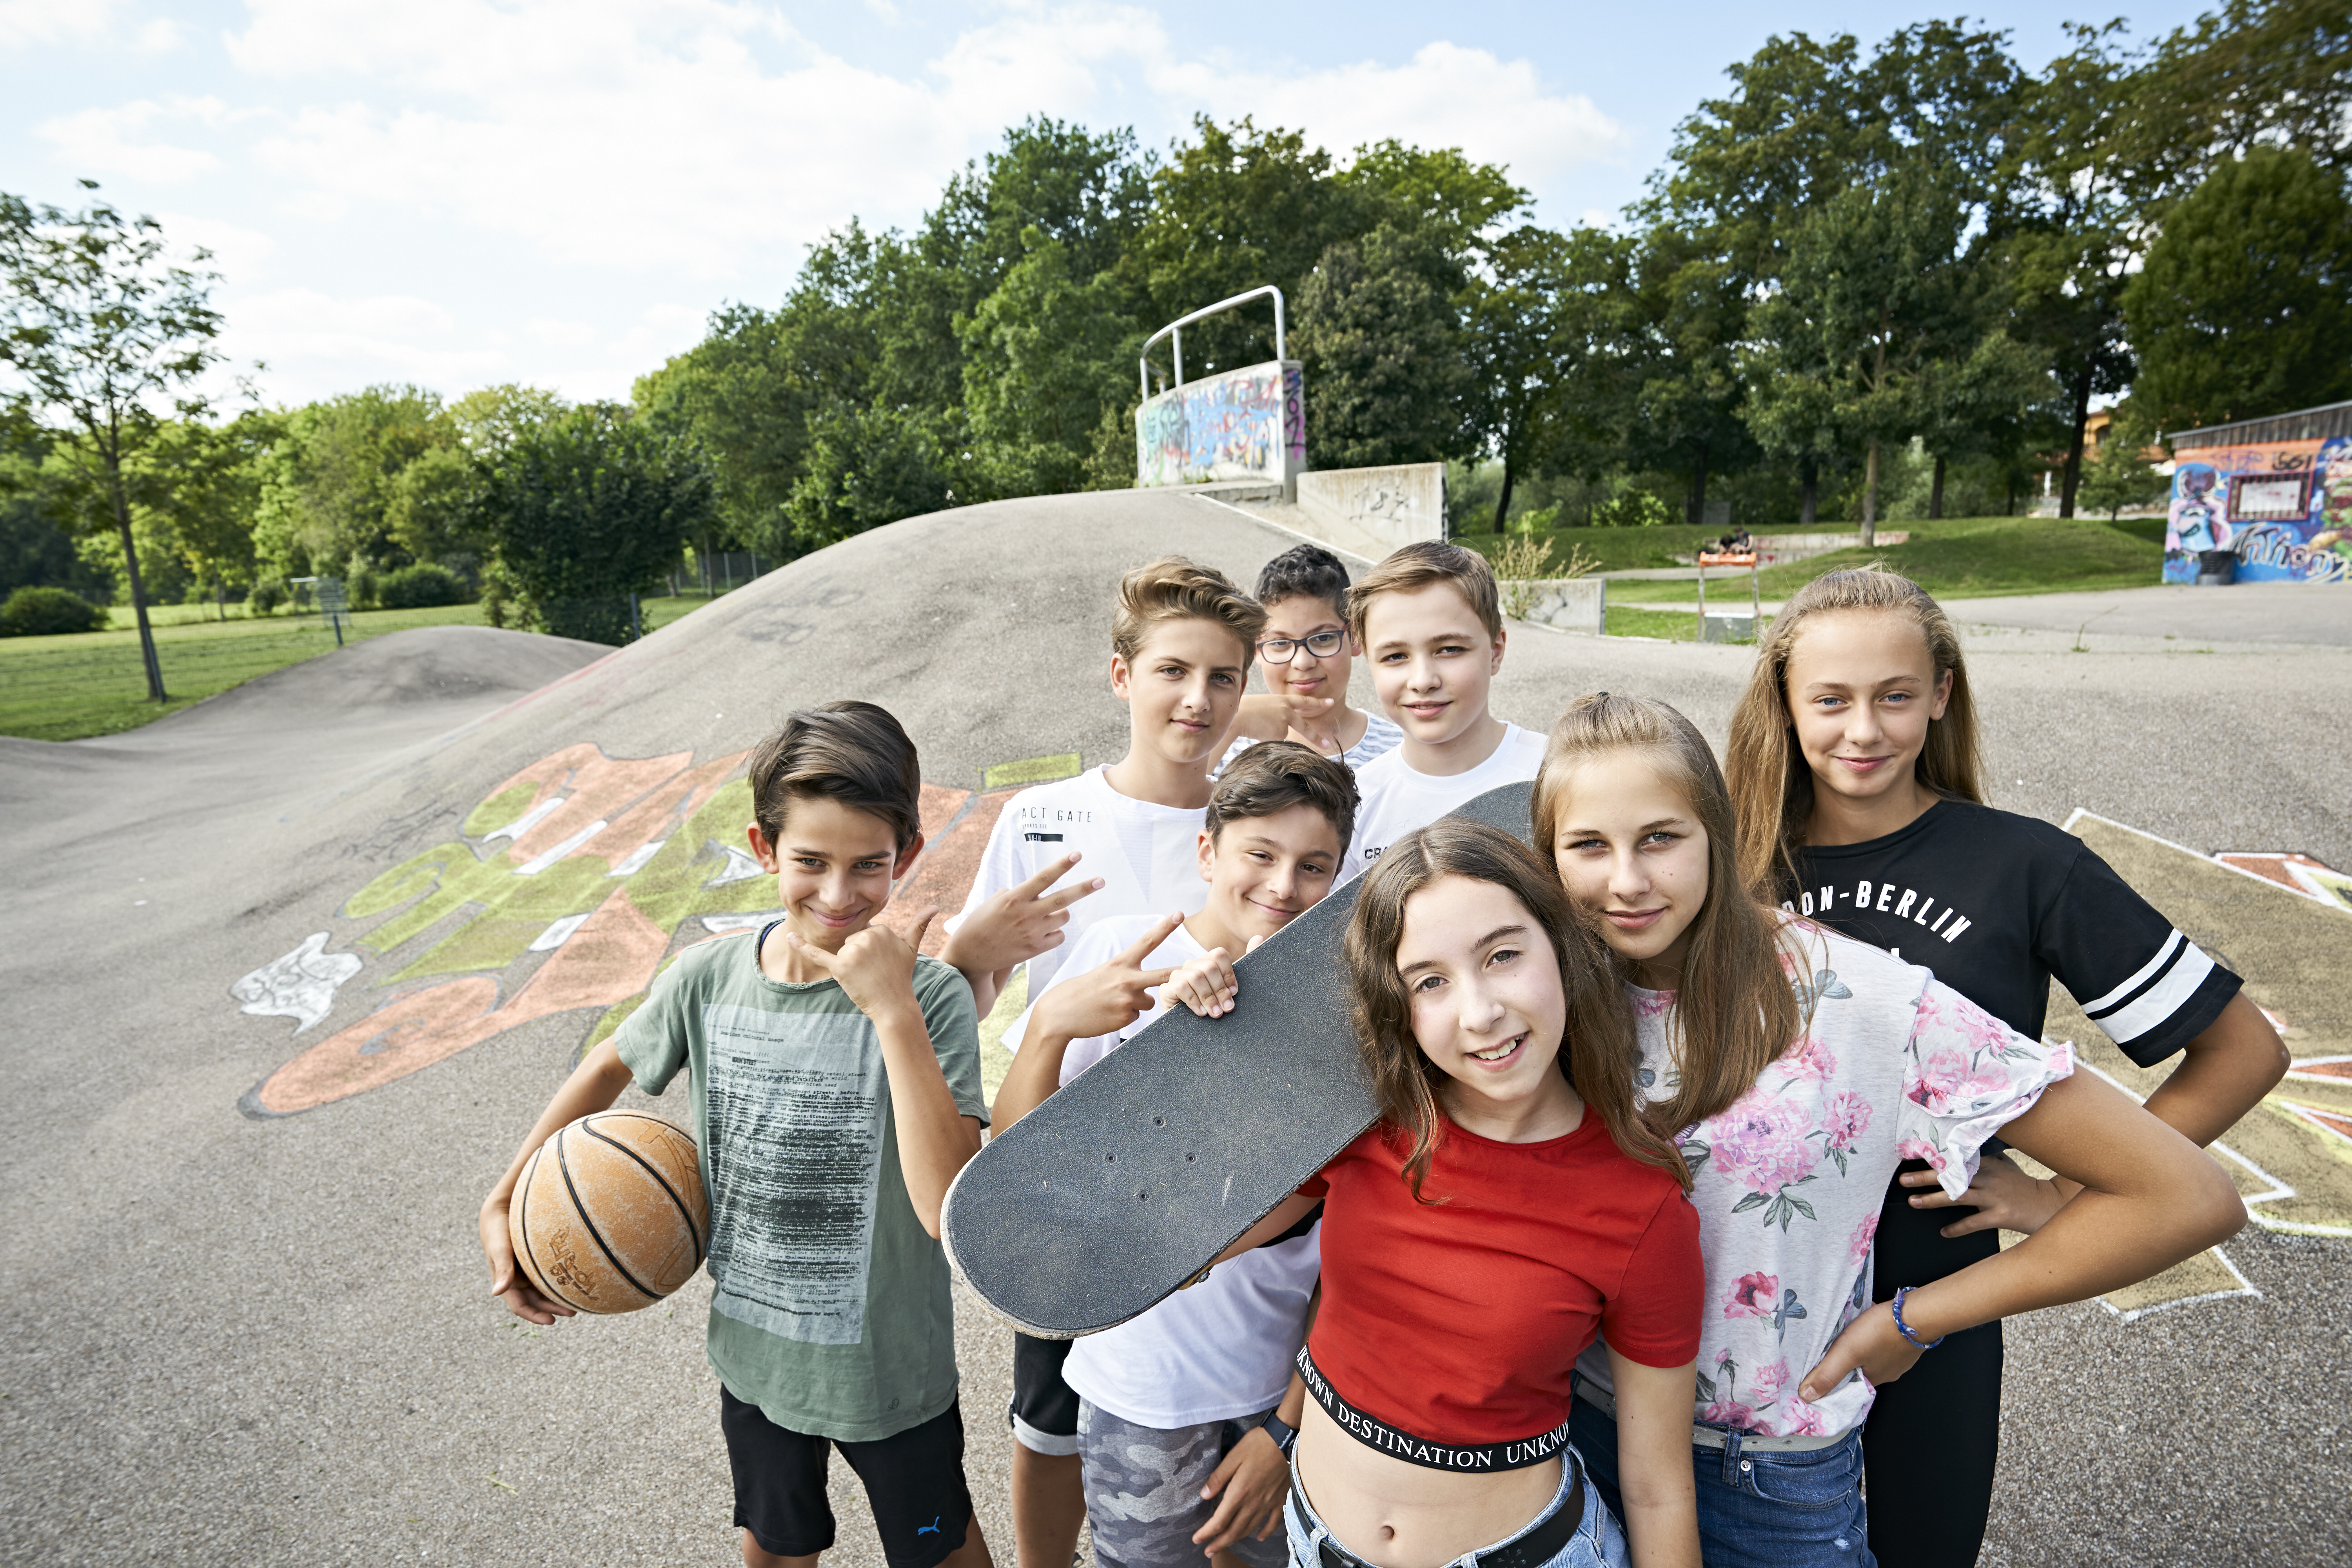 Eine Gruppe junger Jugendlicher mit Skateboards steht dicht beisammen auf einer Skater-Anlage. Ein Junge hält einen Basektball in der Hand.